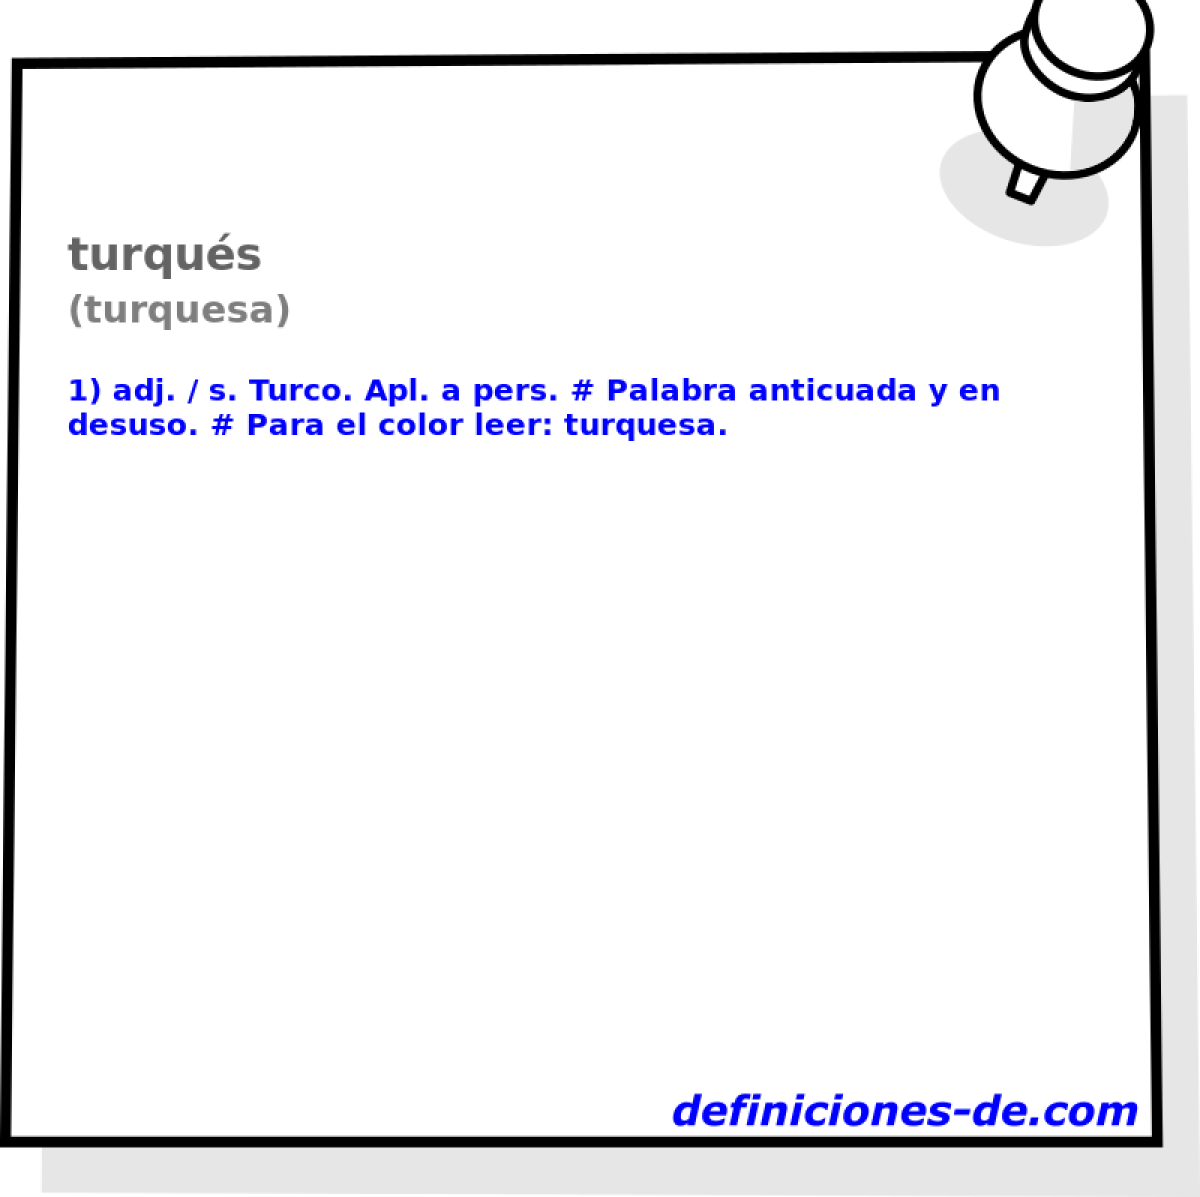 turqus (turquesa)